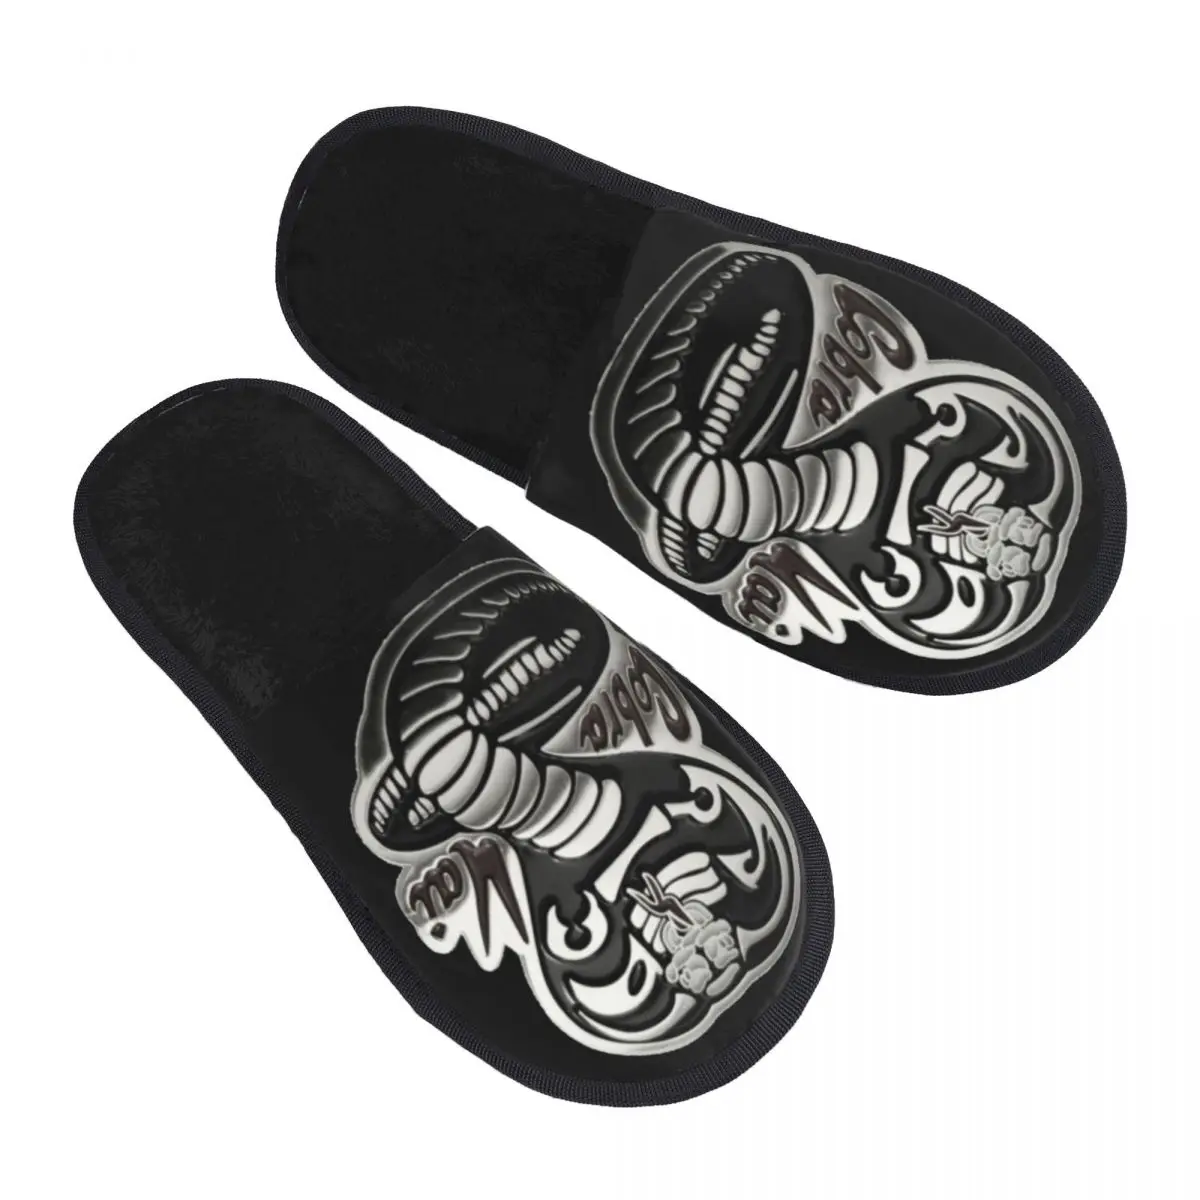 

Cobra Kai Never Dies Steel Metallic Snake Logo Graphic Guest Slippers for Bathroom Women Custom Print House Slipper